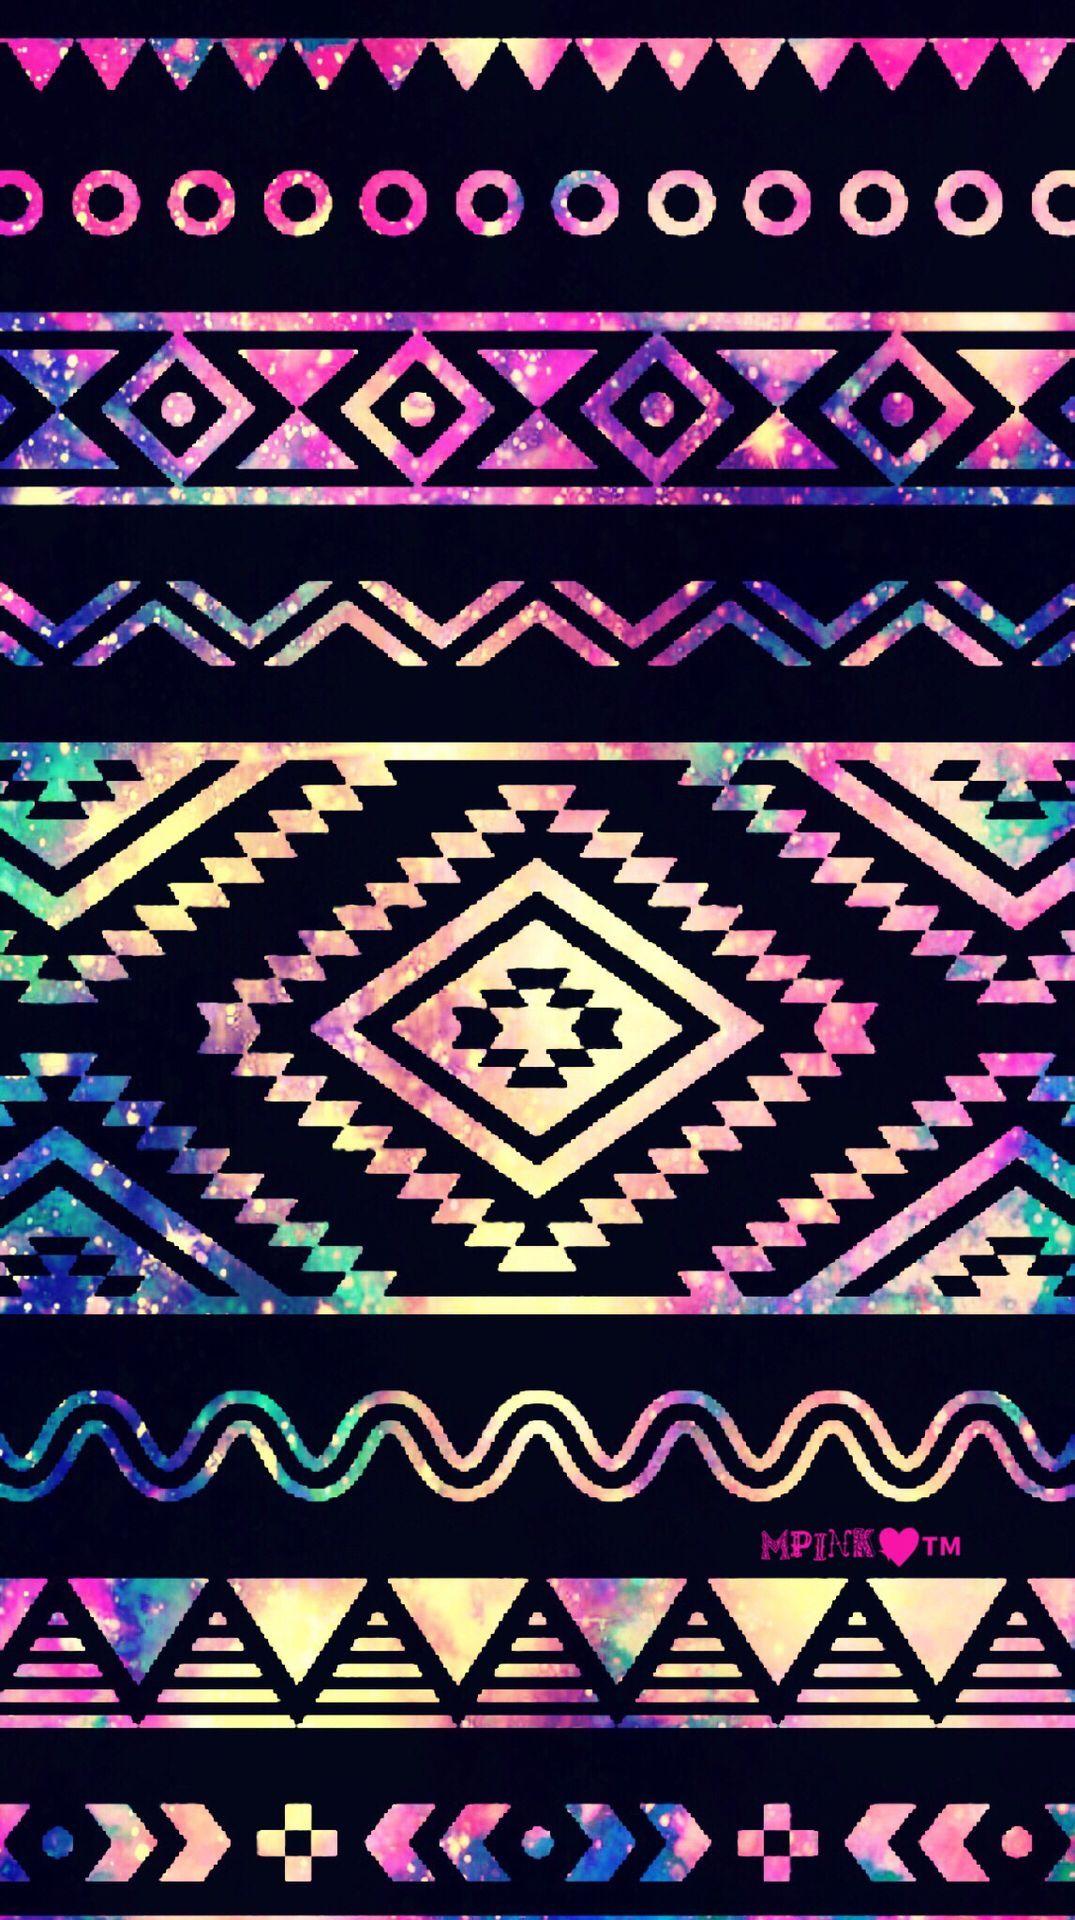 Cute Neon Aztec Galaxy Wallpaper #androidwallpaper #iphonewallpaper